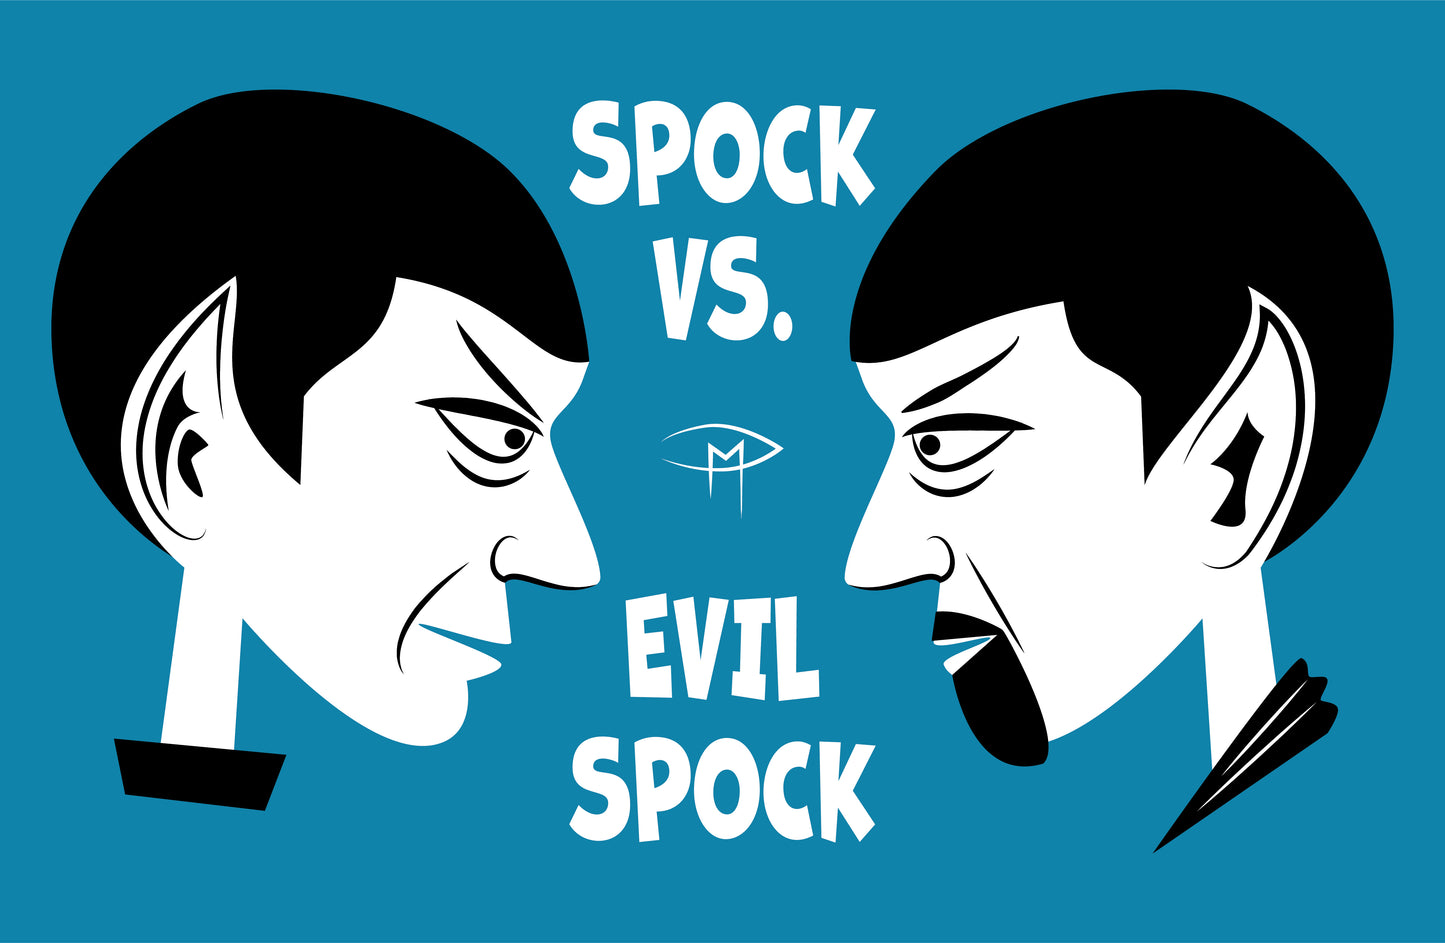 Spock Vs. Evil Spock Poster